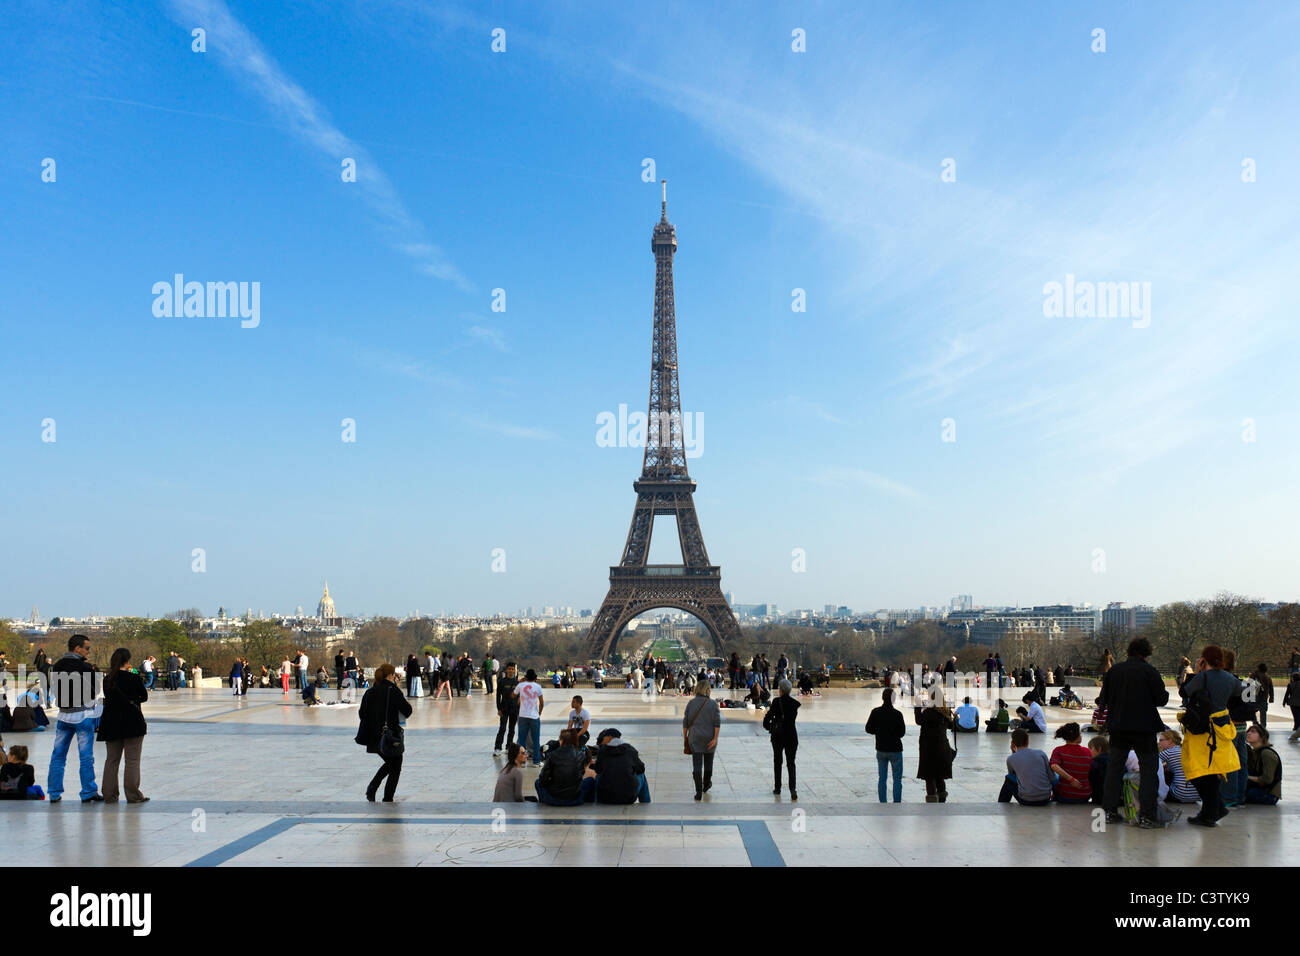 Les touristes l'affichage de la Tour Eiffel depuis le Trocadéro en fin d'après-midi, Paris, France Banque D'Images